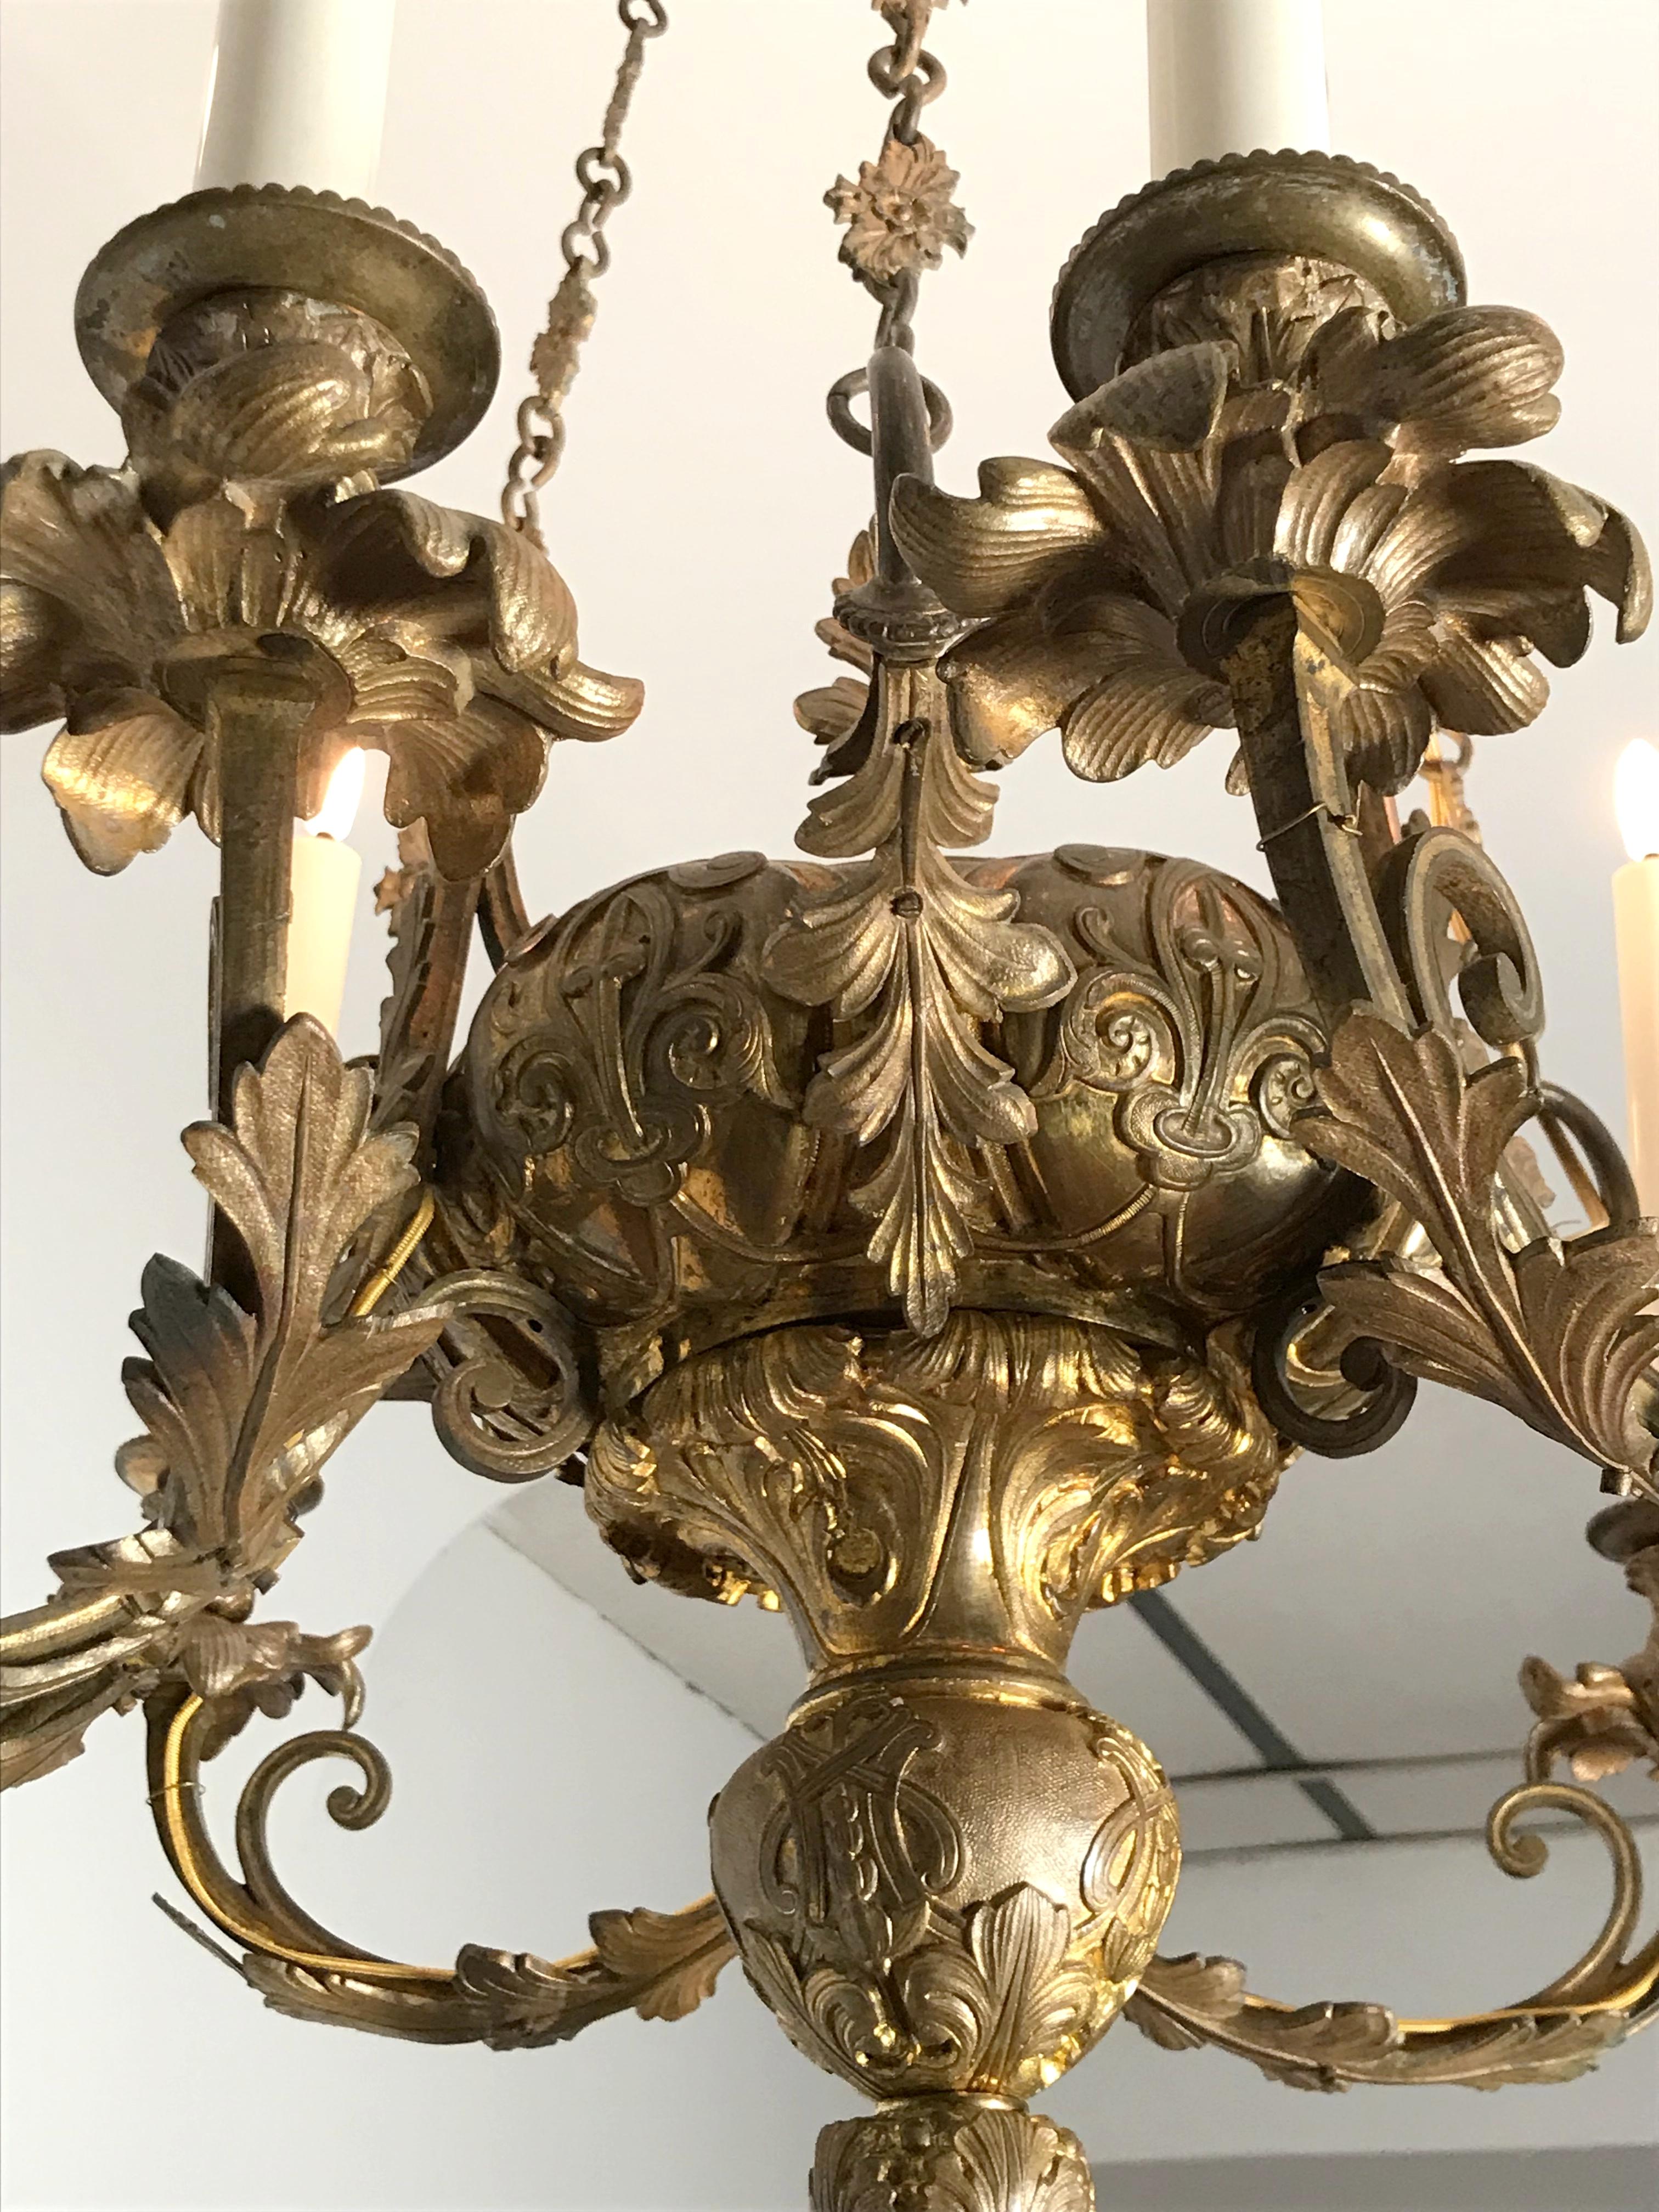 Beau lustre en bronze finement travaillé, période Napoléon III.
Bras à six lumières équipés de bougies 